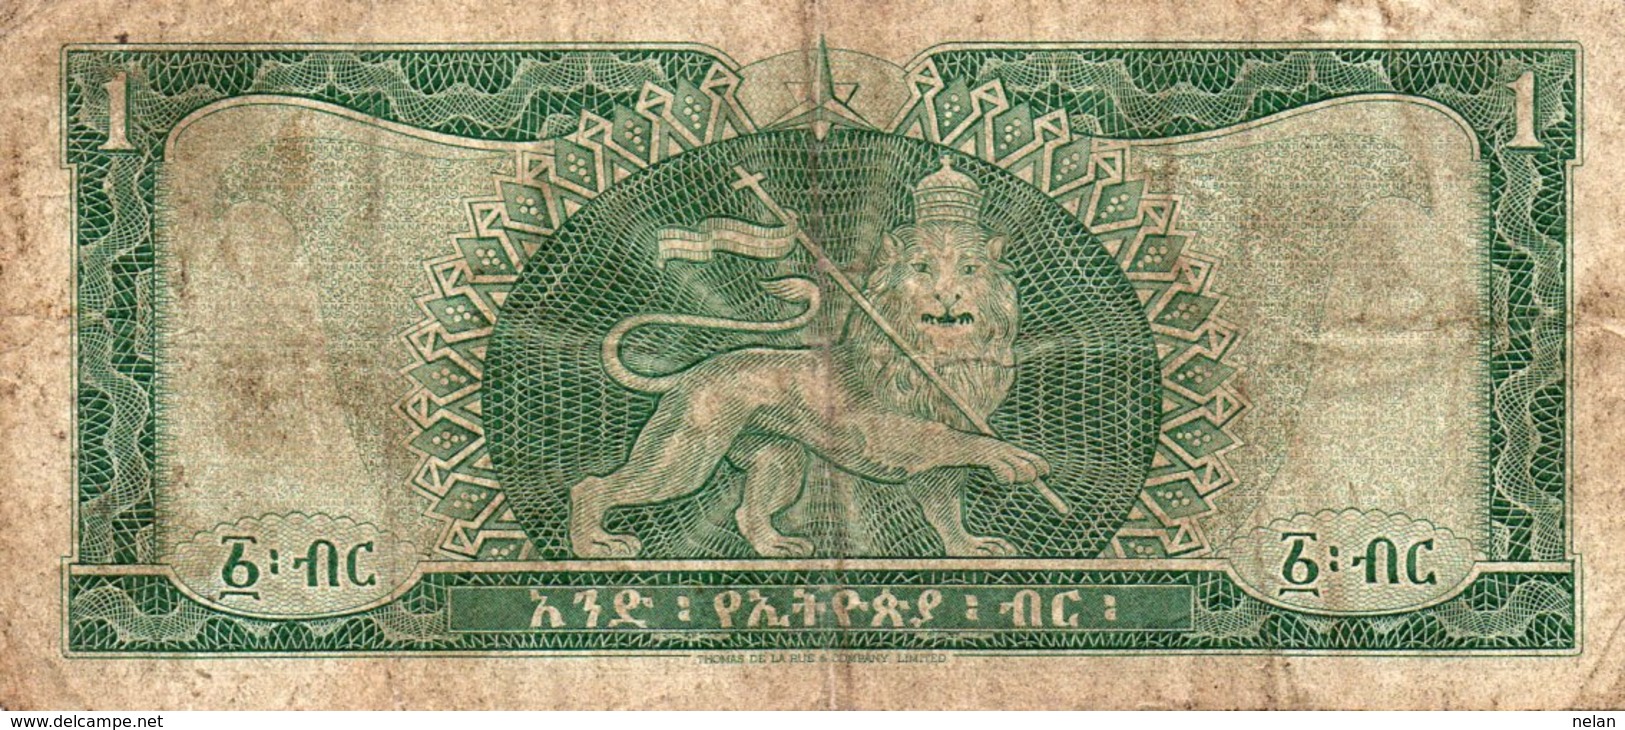 ETHIOPIA 1 DOLLAR 1966 P-25 - Ethiopia